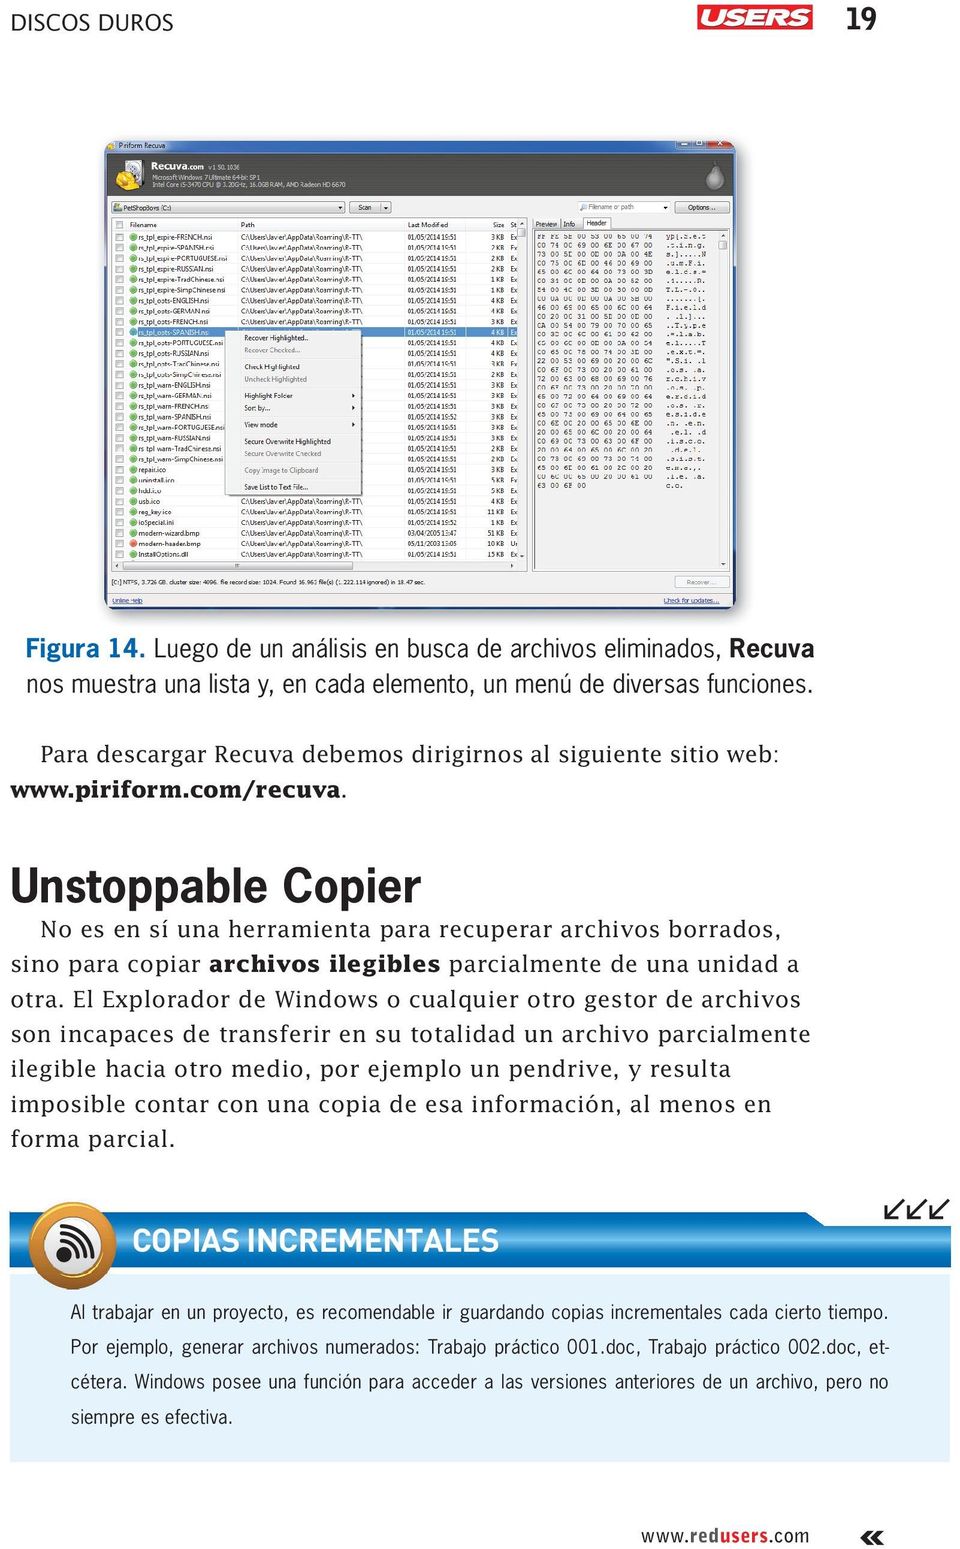 Unstoppable Copier No es en sí una herramienta para recuperar archivos borrados, sino para copiar archivos ilegibles parcialmente de una unidad a otra.